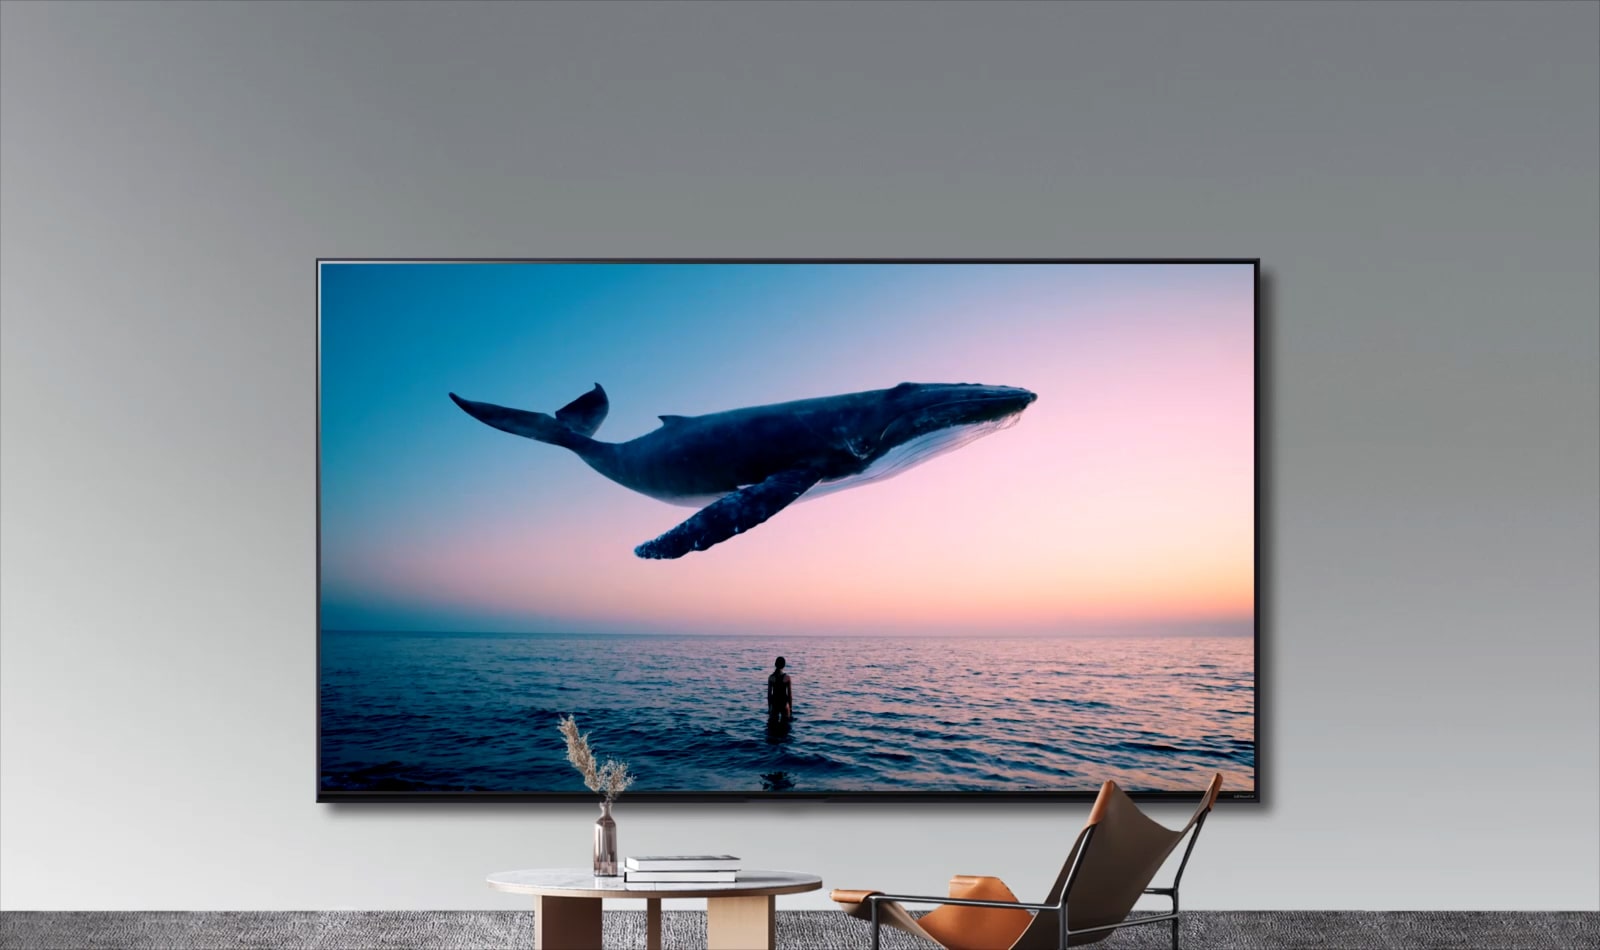 Une énorme baleine et une femme apparaissent sur le téléviseur accroché au mur d’une pièce où se trouvent un simple canapé orange et une table ronde. 